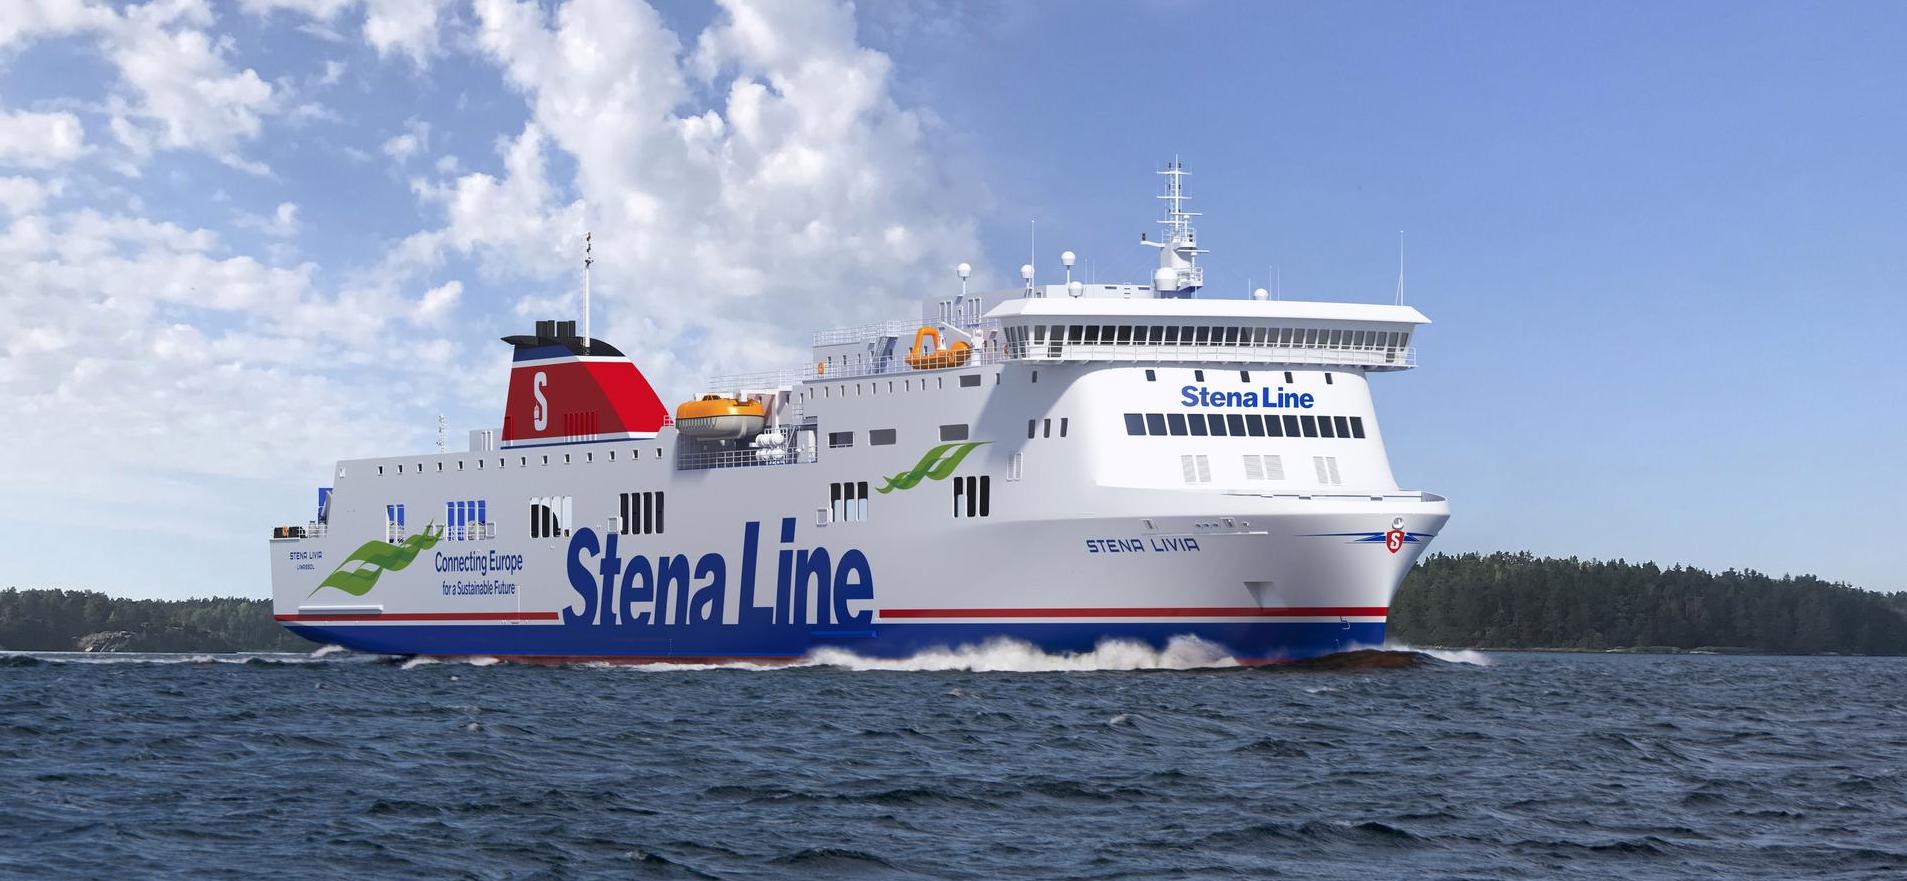 Kuva Stena Line - Stena Livia aluksesta